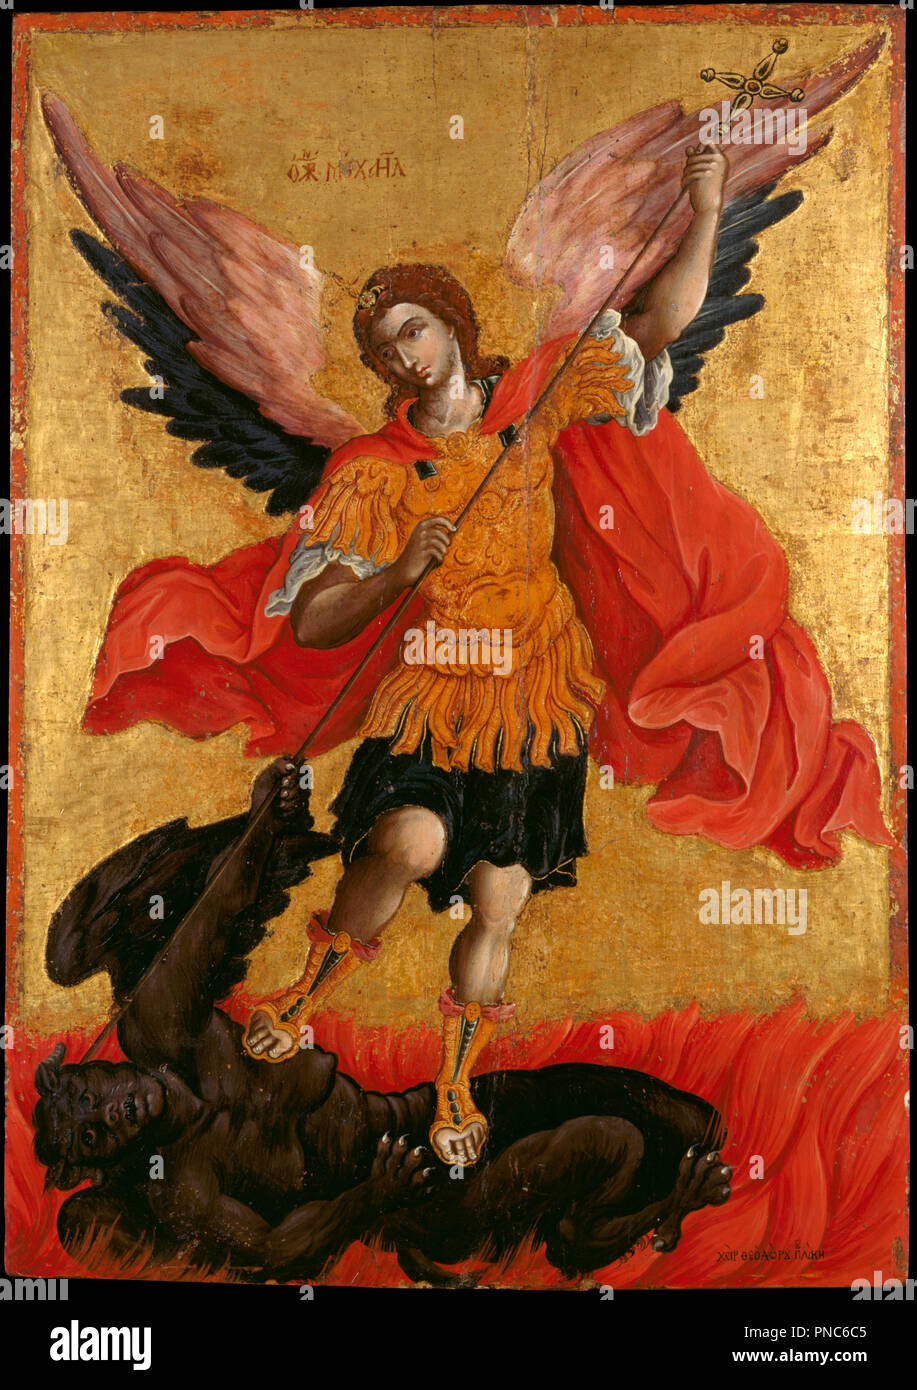 L'Arcangelo Michele. Data/Periodo: 1650 - 1699. Icona. Altezza: 760 mm (29.92 in); larghezza: 543 mm (21.37 in). Autore: Poulakis Theodoros. Poulakis, Teodoro. Foto Stock